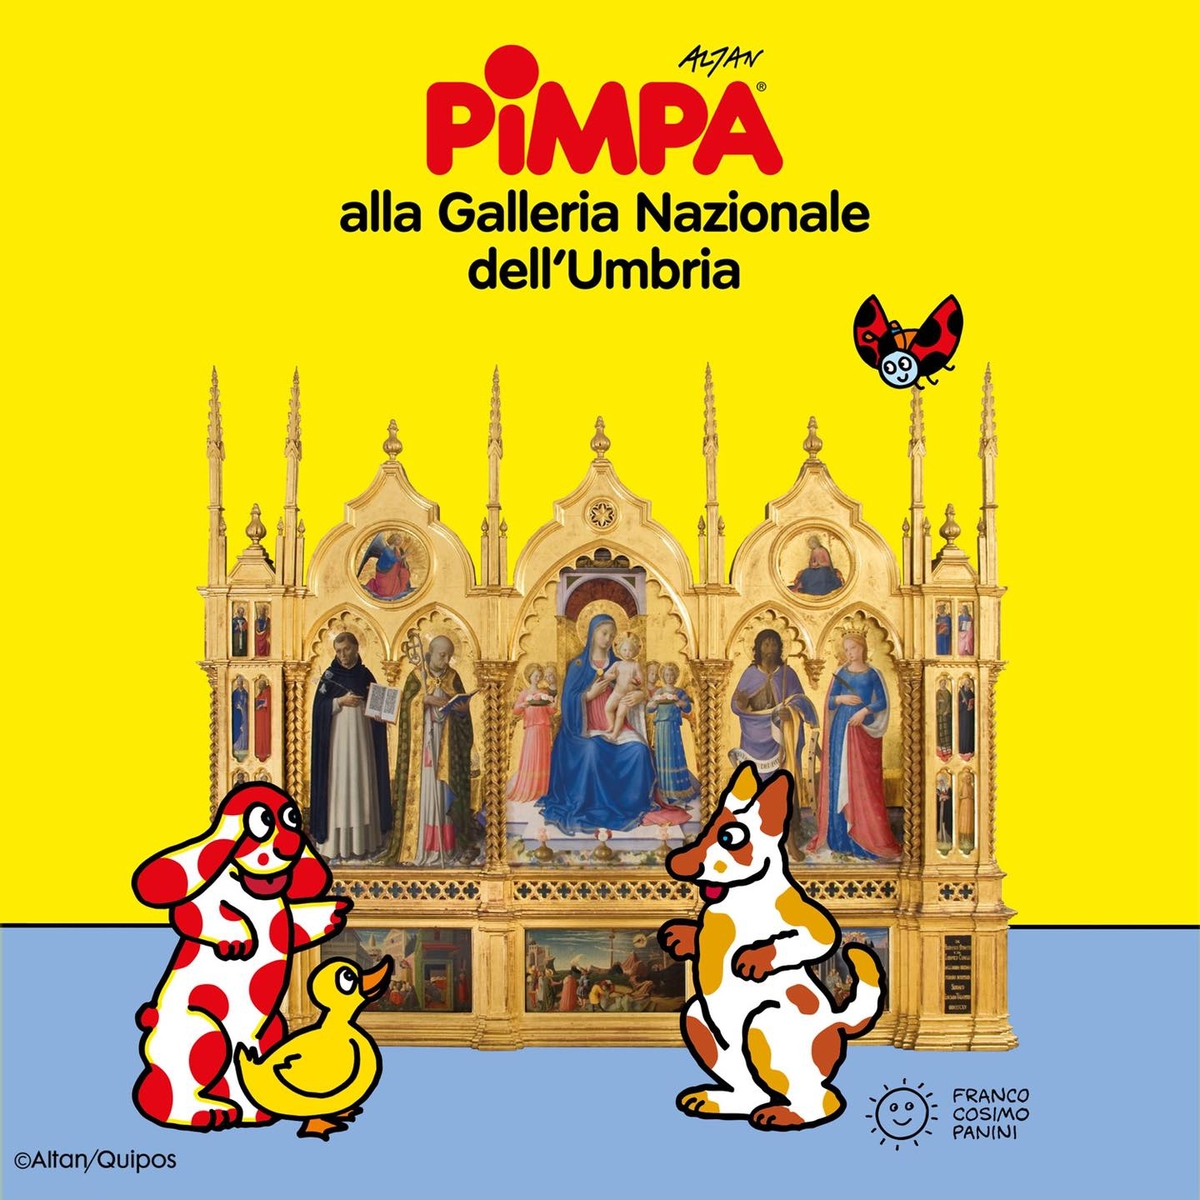 Pimpa alla Galleria Nazionale dell'Umbria (Franco Cosimo Panini, Modena 2022)